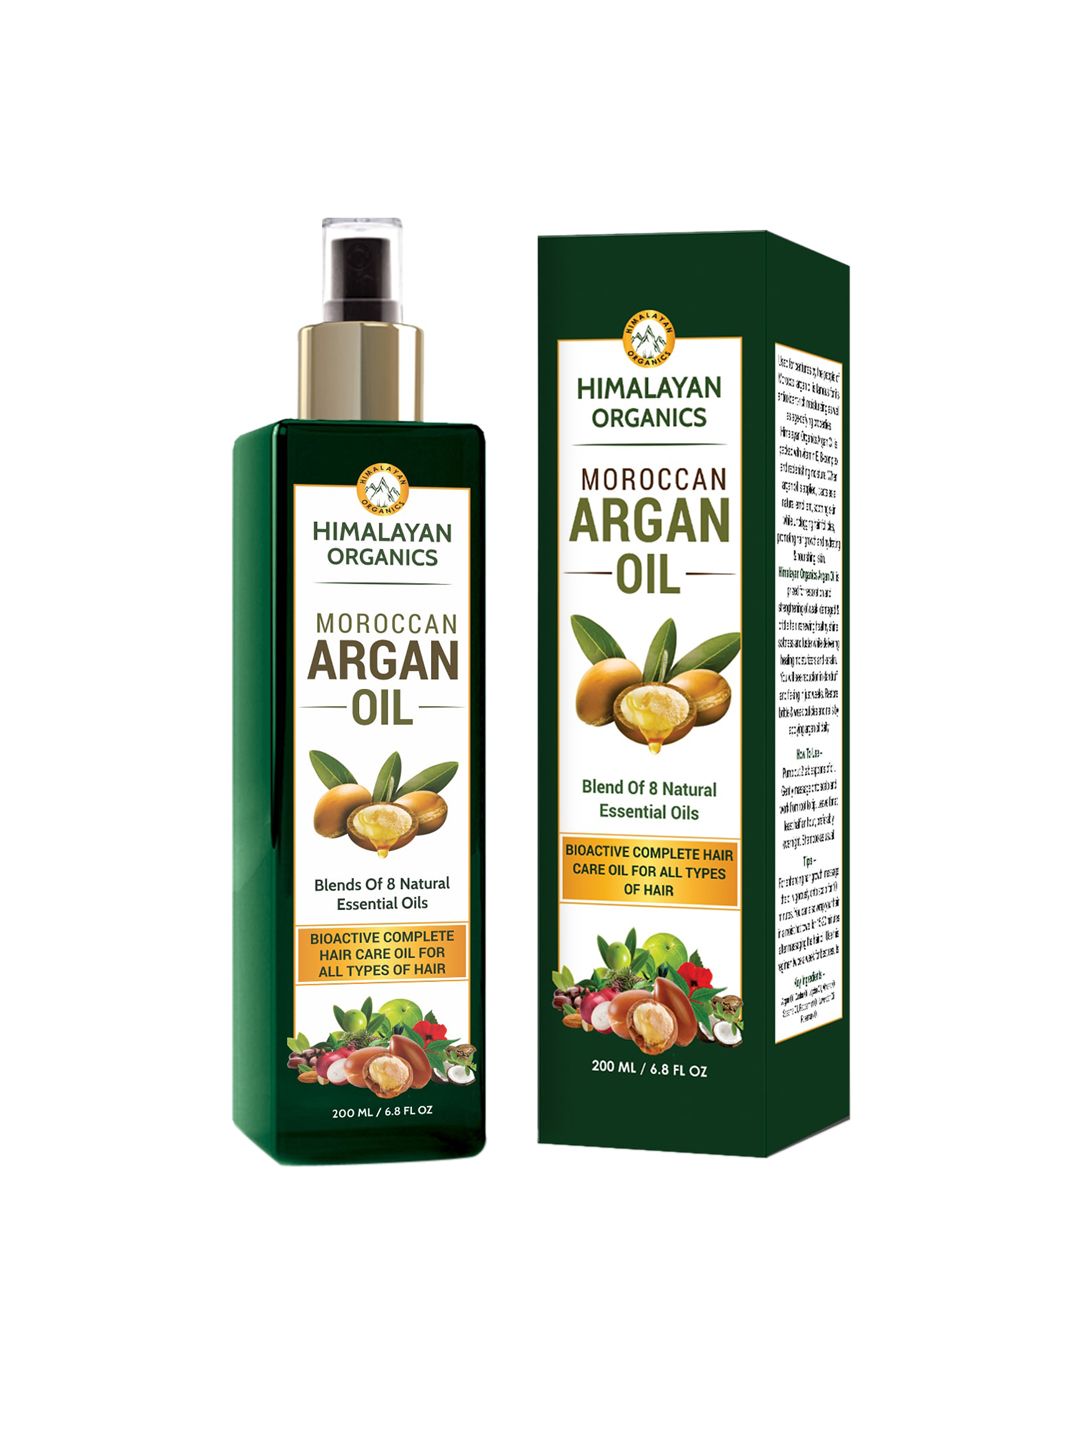 Himalayan Organics Moroccan Argan Oil 200ml Price in India